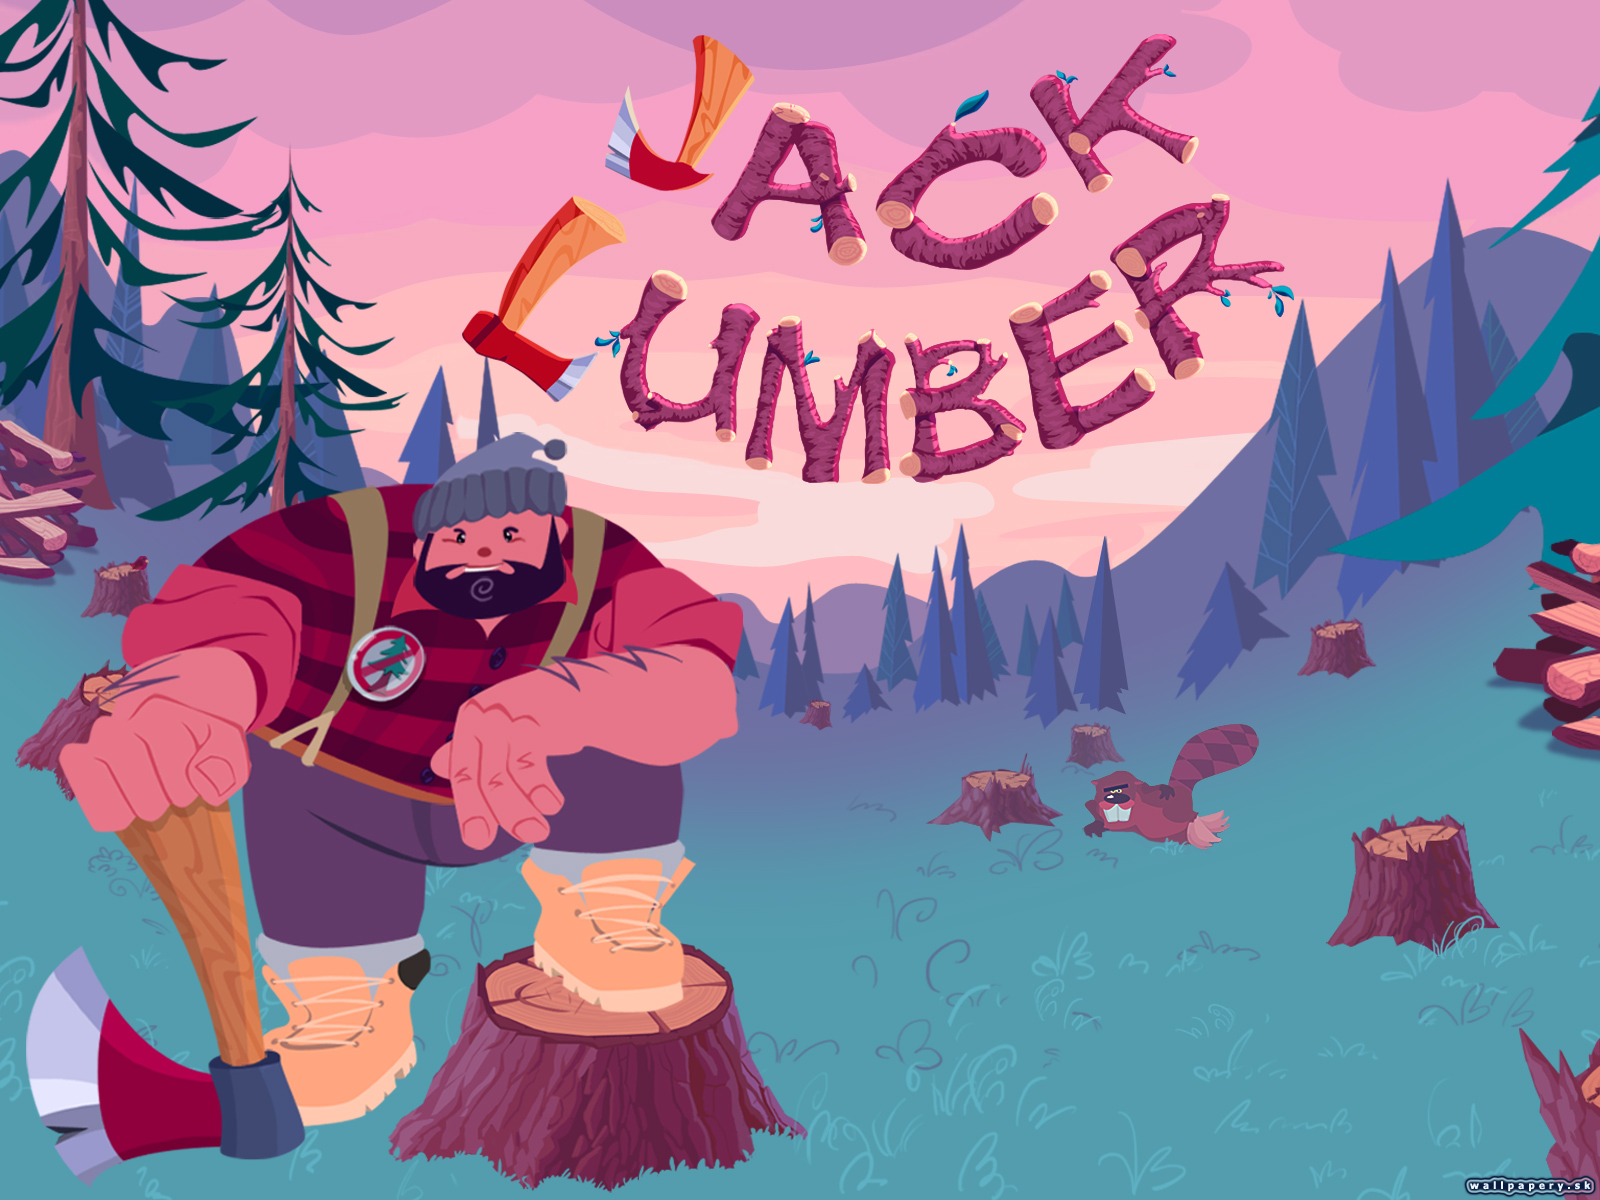 Jack Lumber - wallpaper 1